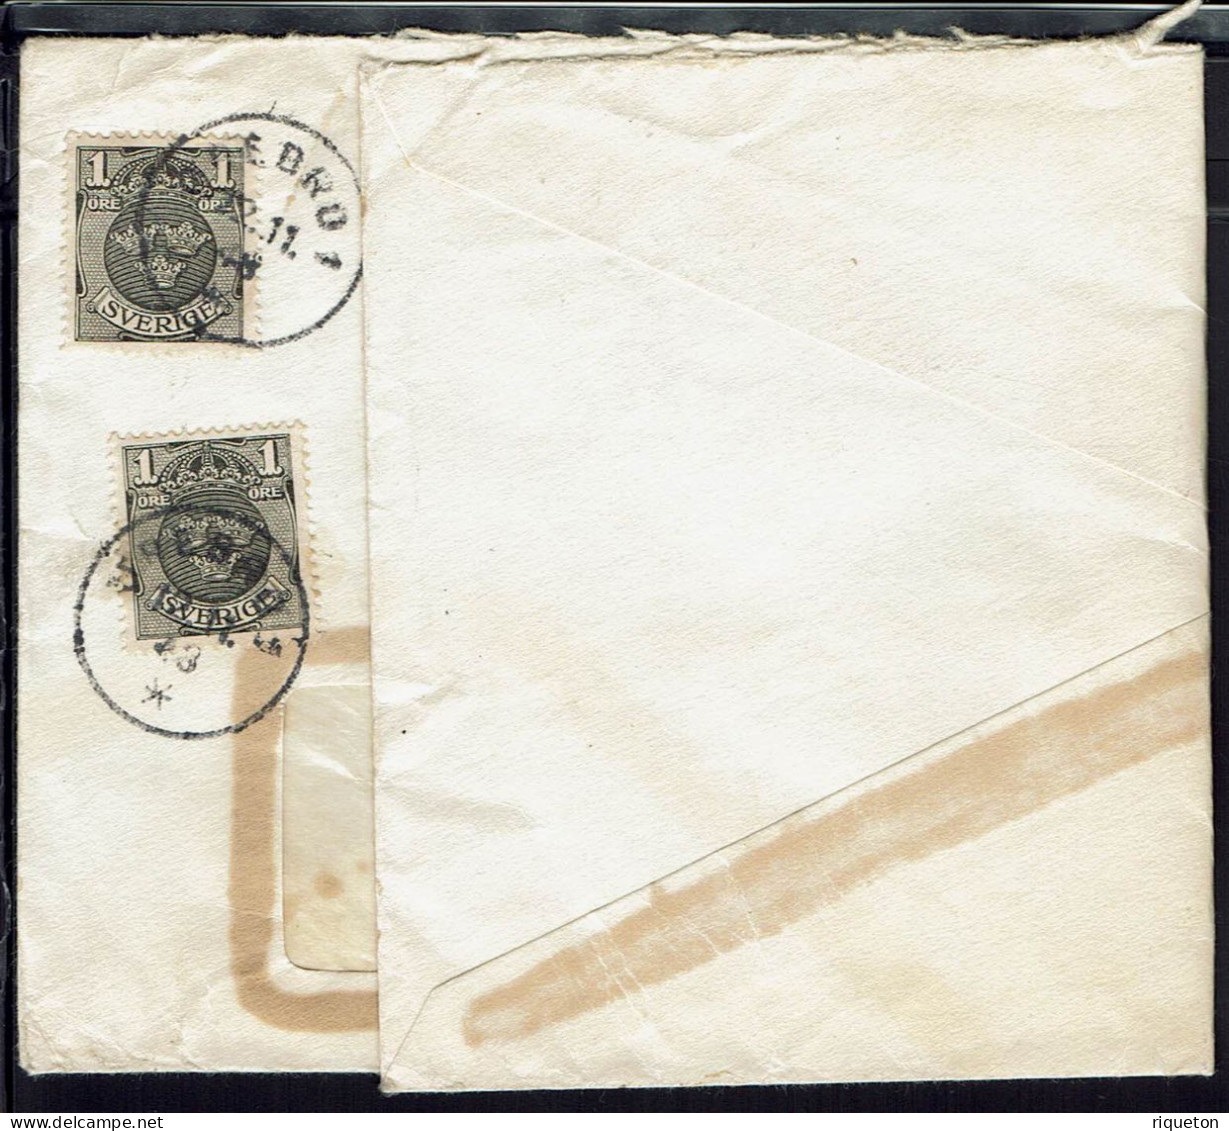 Affranchissement Multiple Sur Enveloppe à Fenêtre  A.B  Svensk  Fotokonst  Orebro. Cachets Orebro 1 Du 12-11-1948. - Cartas & Documentos